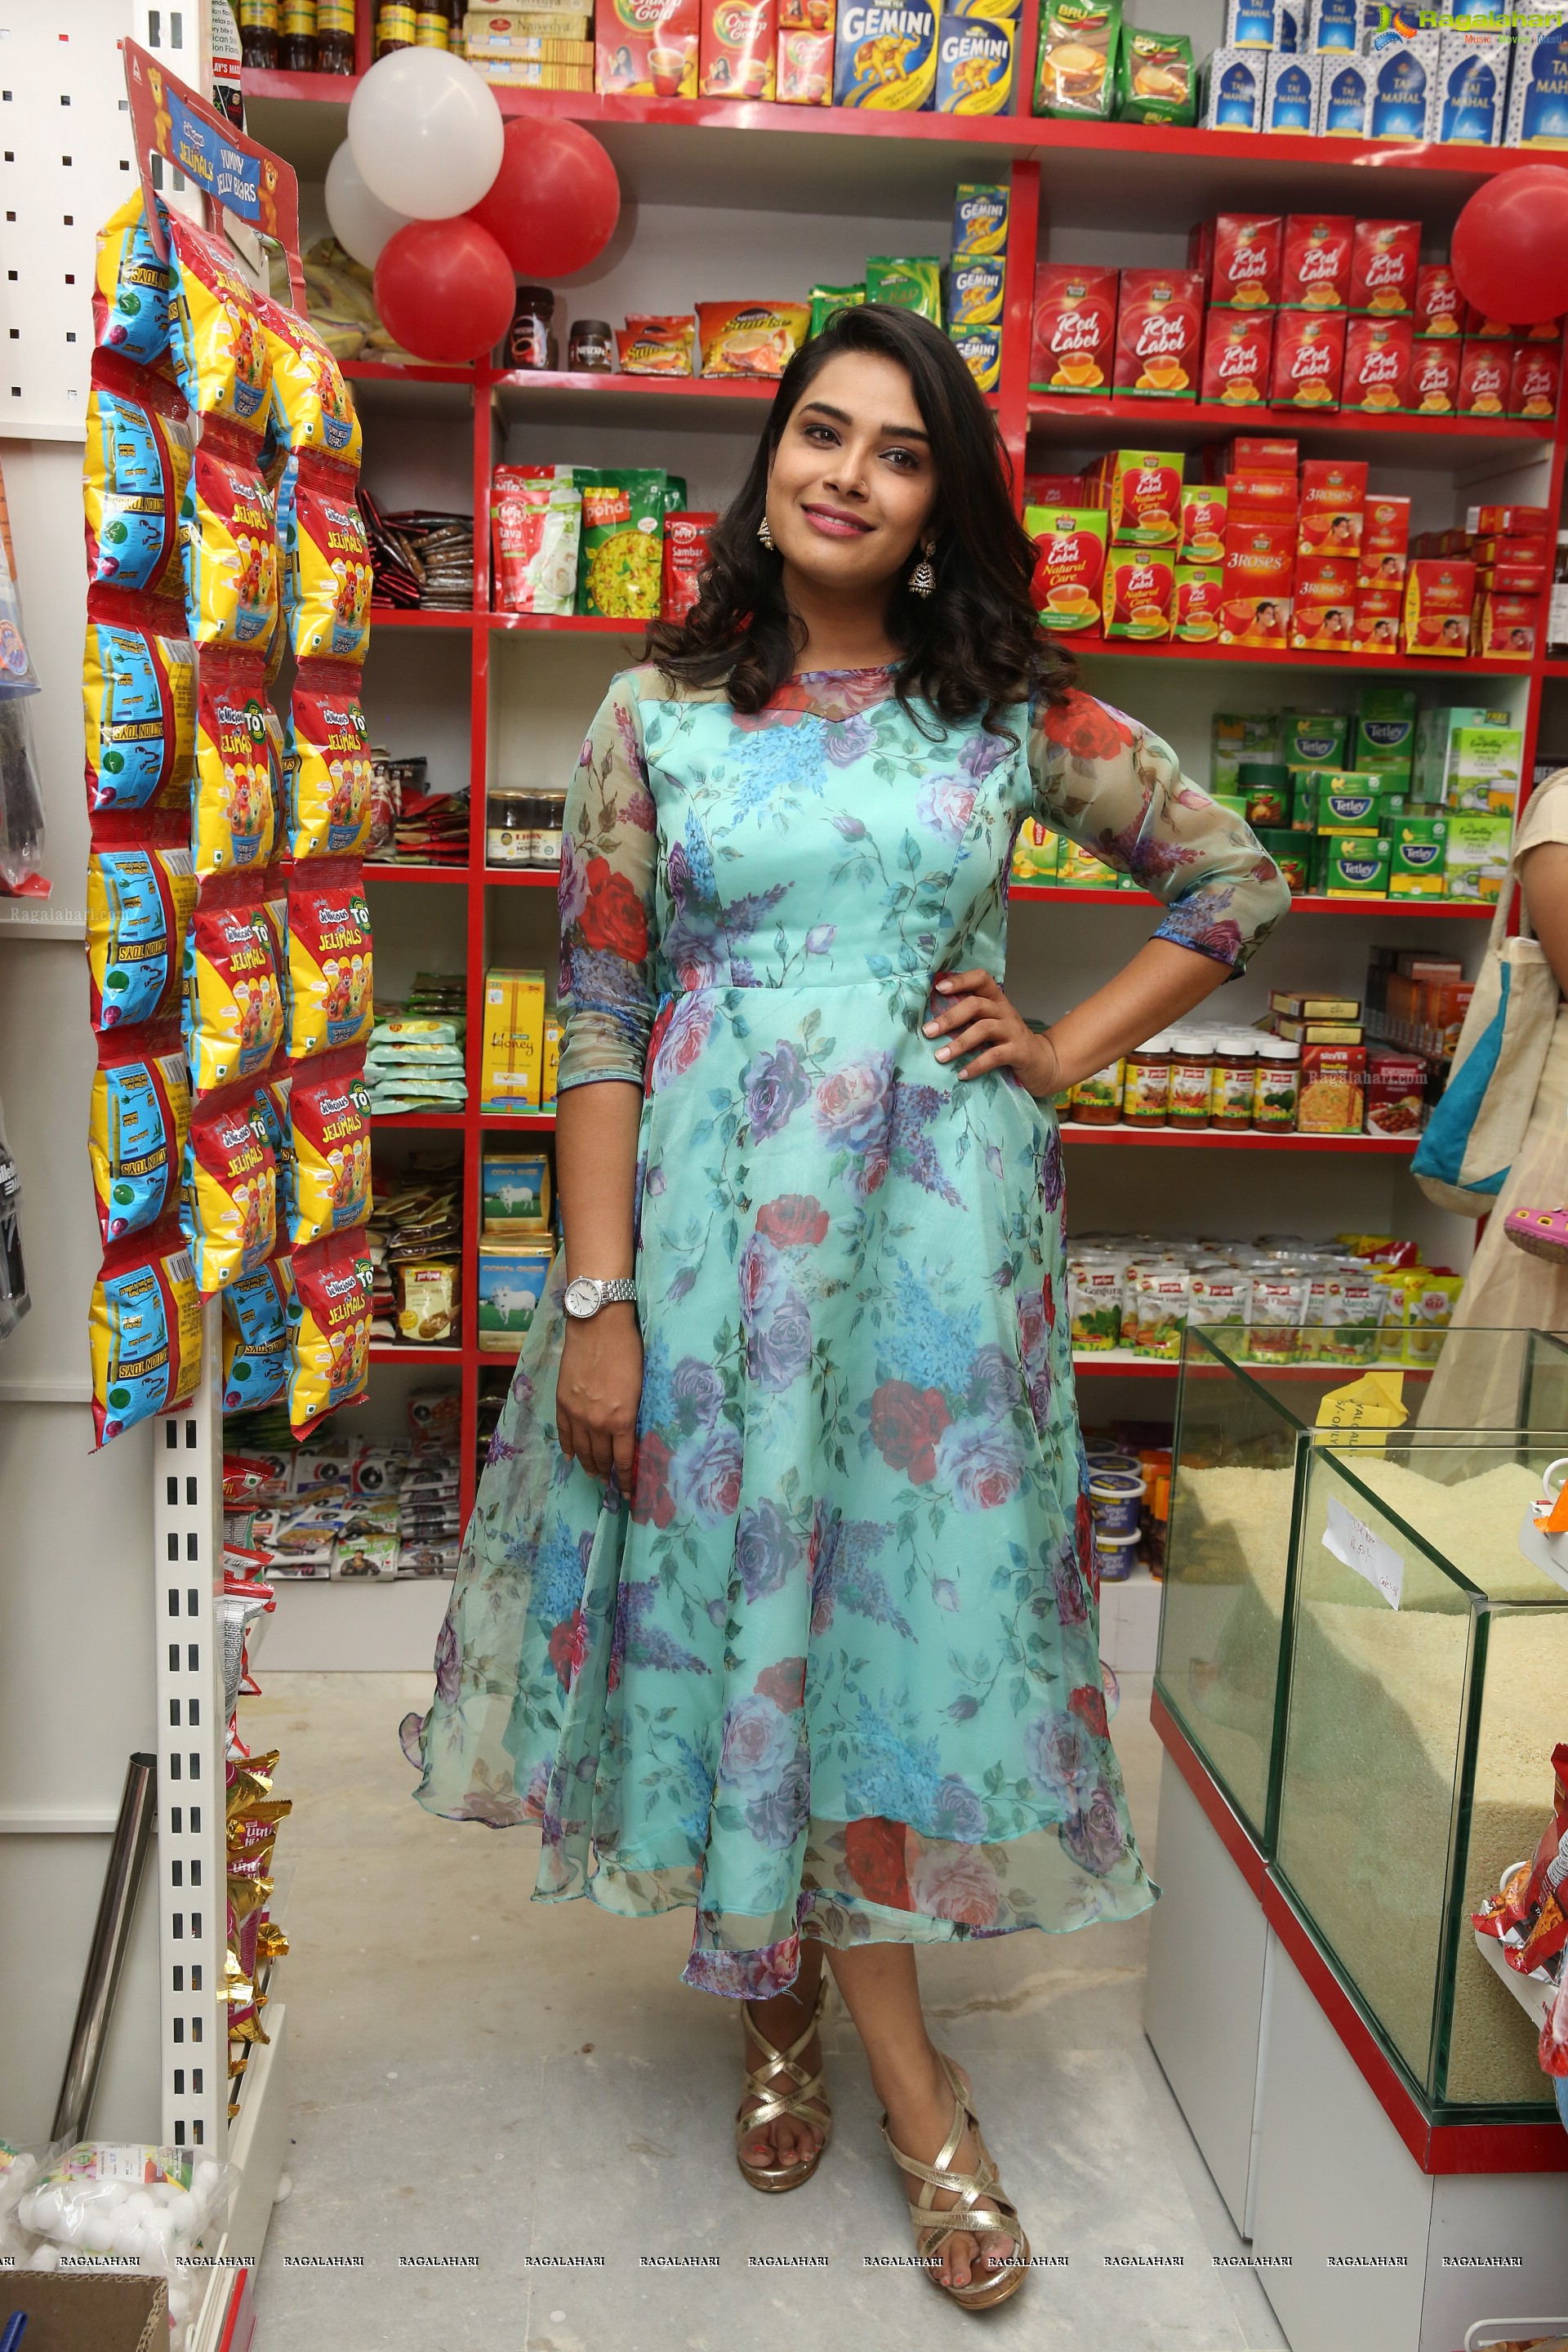 Hari Teja at Chervi Super Stores (High Definition)